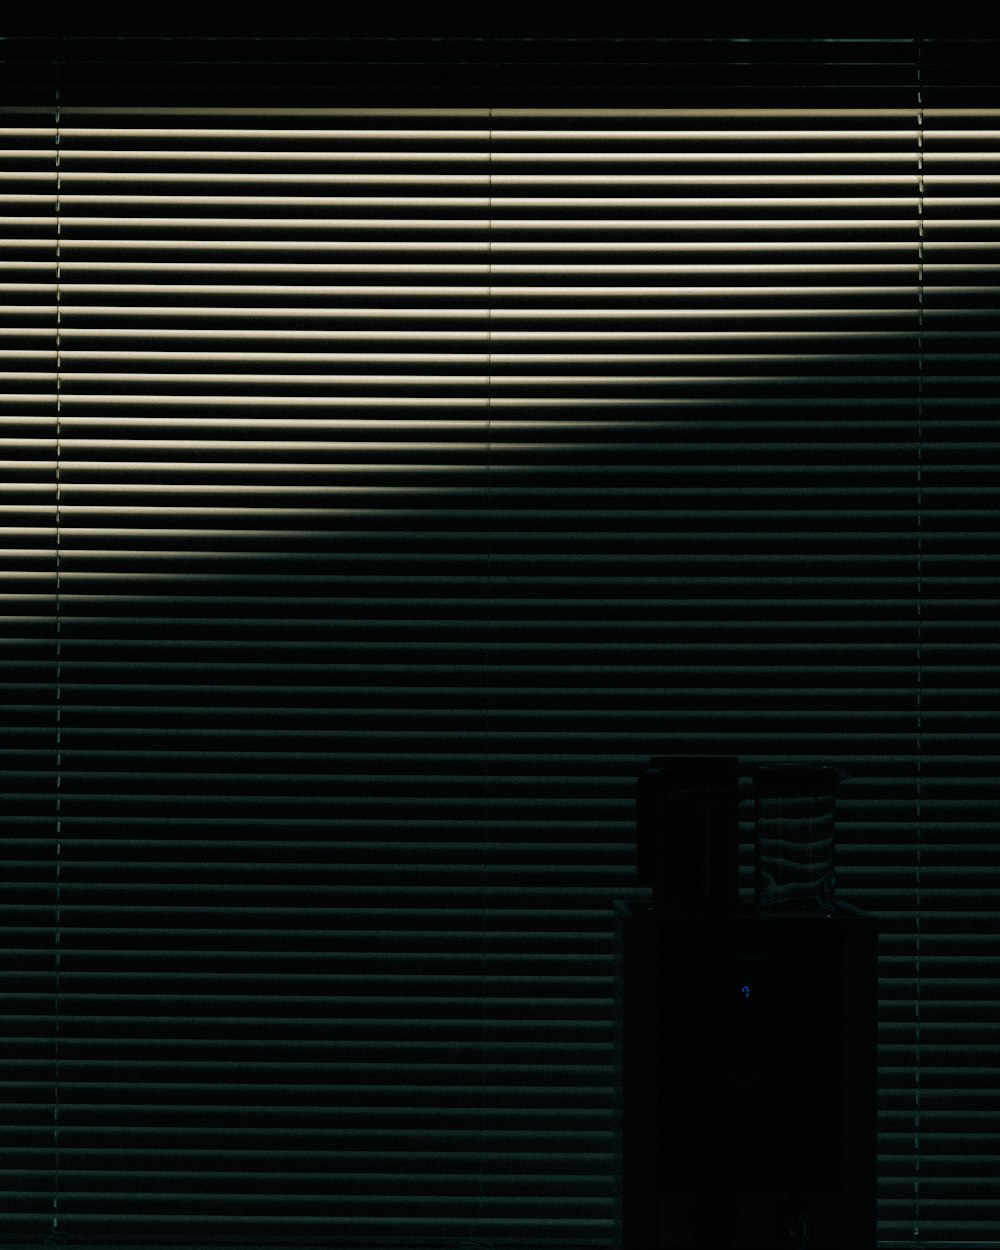 Una foto en blanco y negro de una ventana